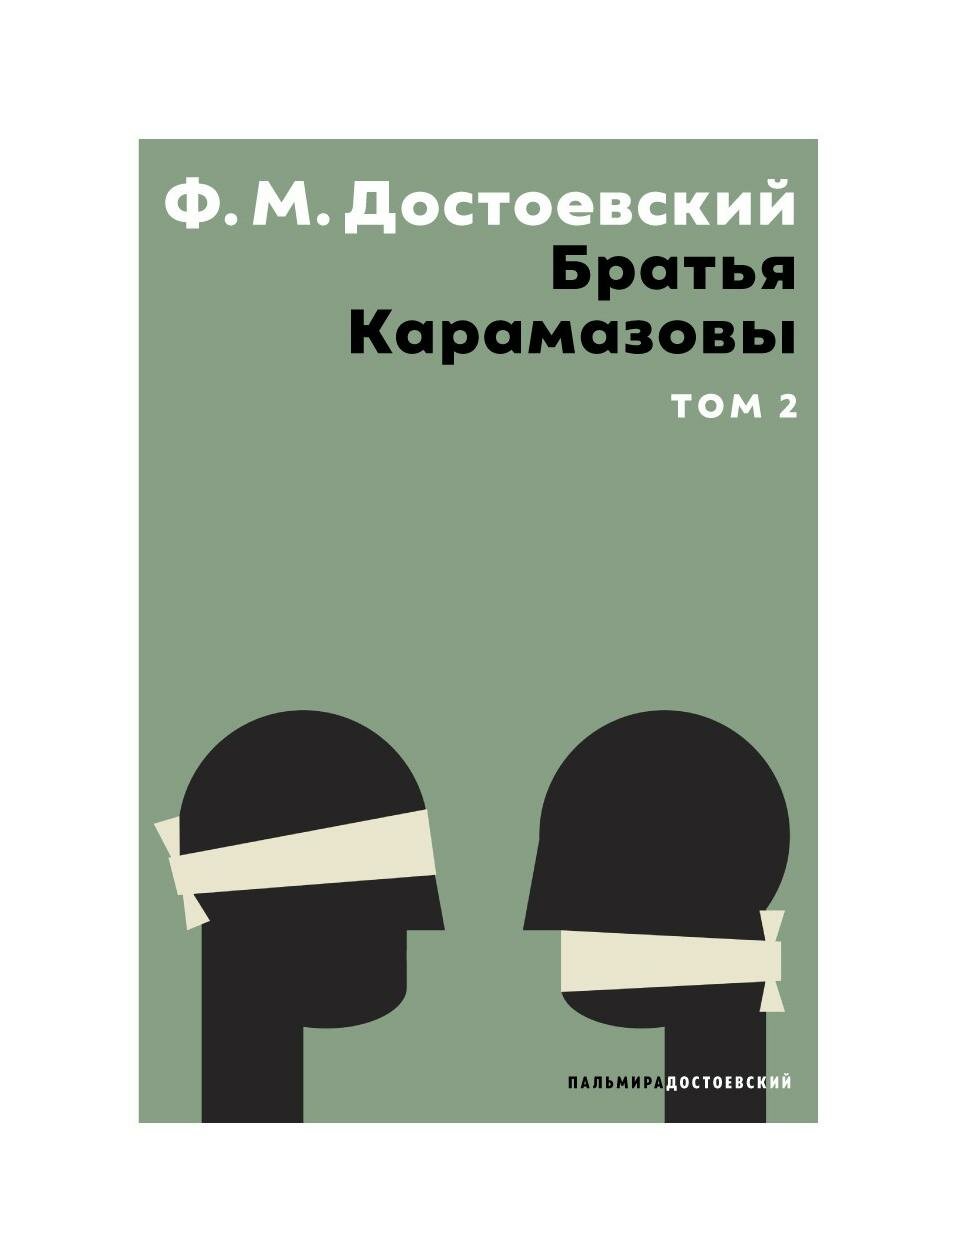 Братья Карамазовы: В 2 т. Т. 2: роман. Достоевский Ф. М. Т8 RUGRAM